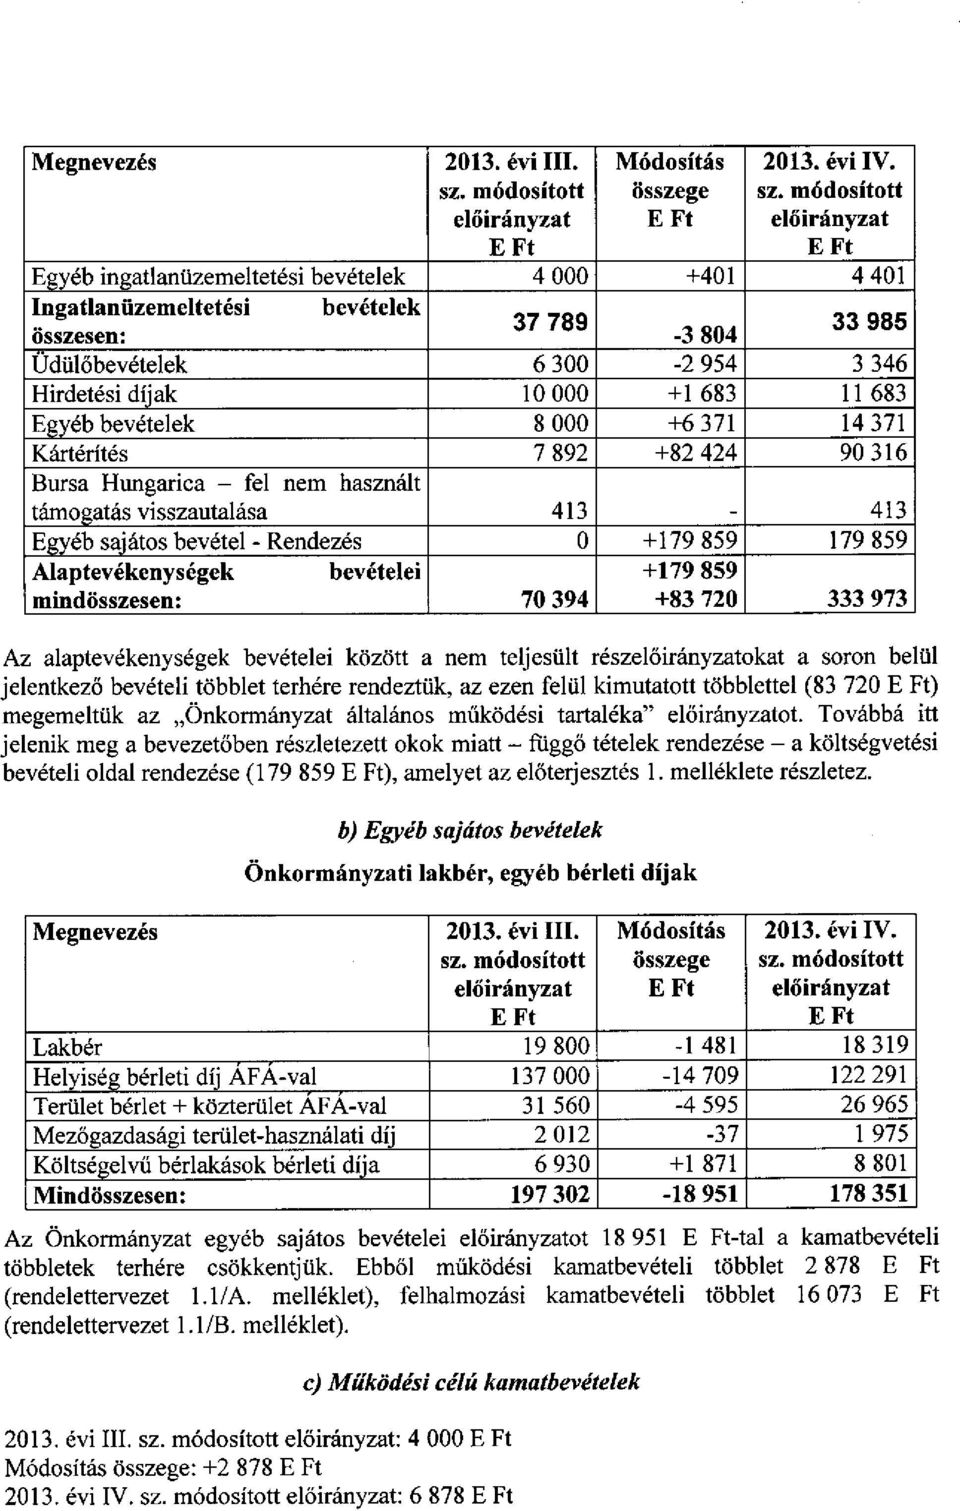 bevételek 8 000 +6 371 14 371 Kártérítés 7 892 +82 424 90 316 Bursa Hungarica - fel nem használt támogatás visszautalása 413 413 Egyéb sajátos bevétel - Rendezés 0 +179 859 179 859 Alaptevékenységek